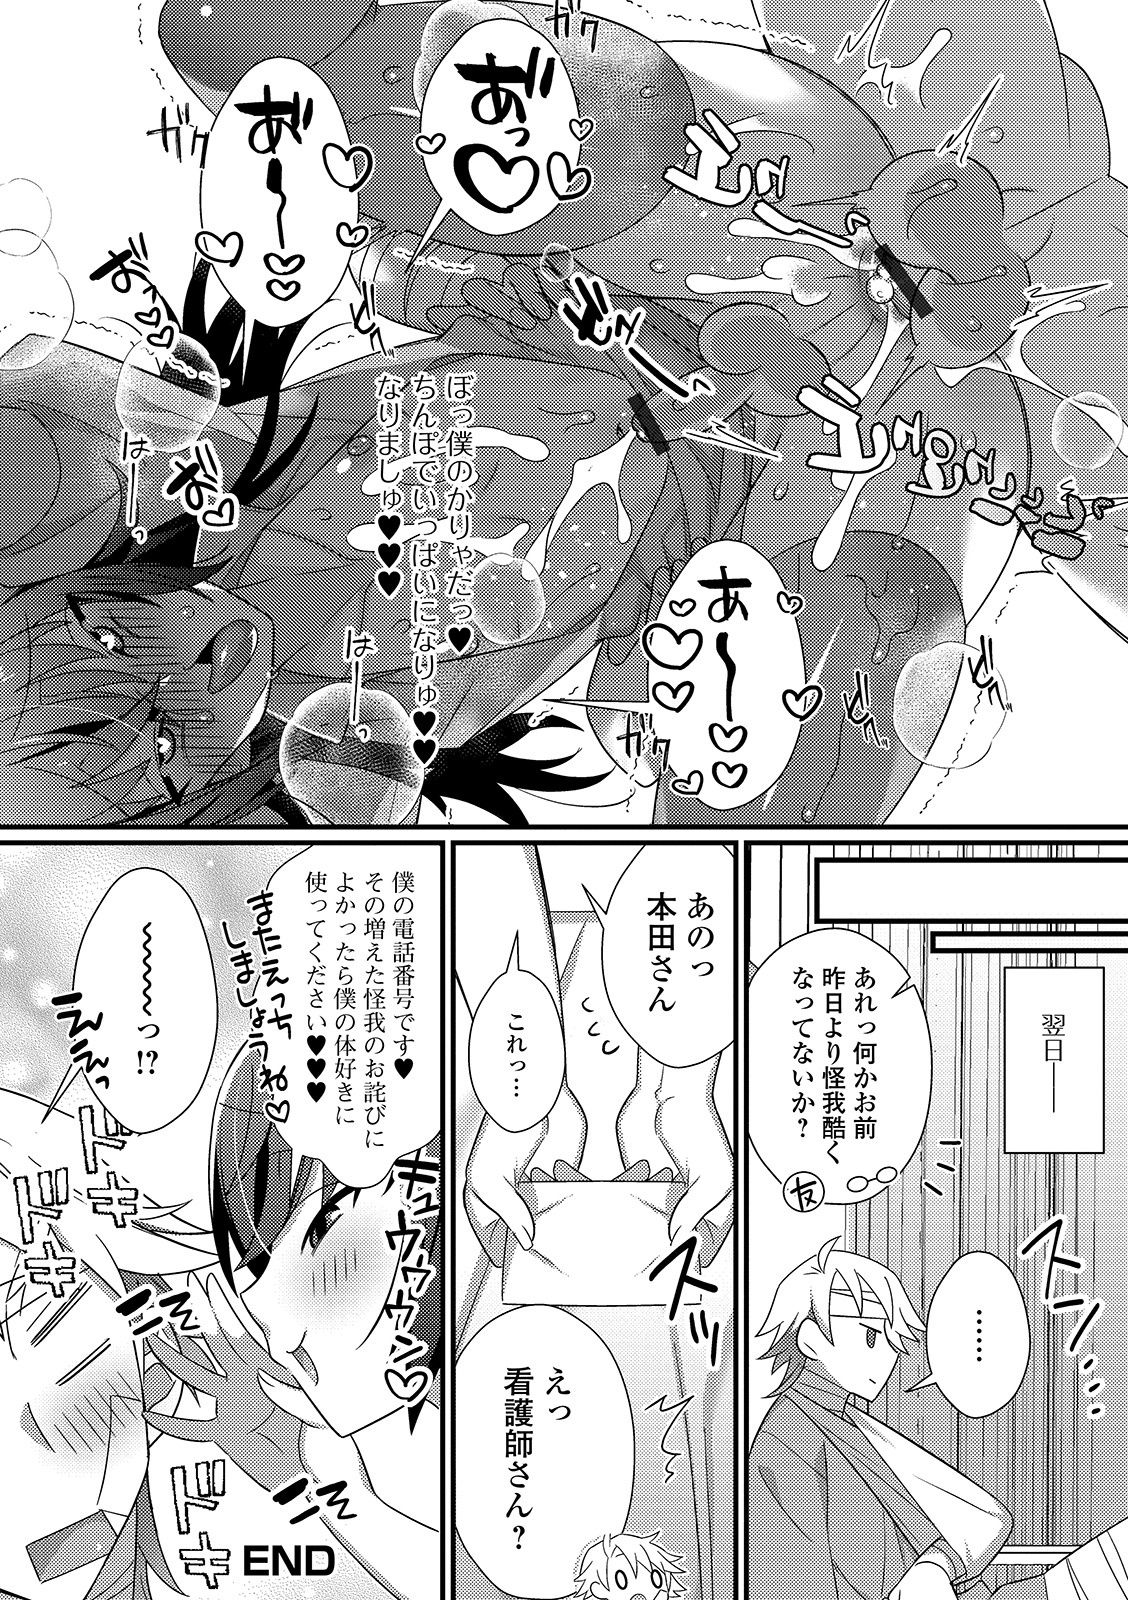 [Anthology] Gekkan Web Otoko no Ko-llection! S Vol. 45 [Digital] page 34 full